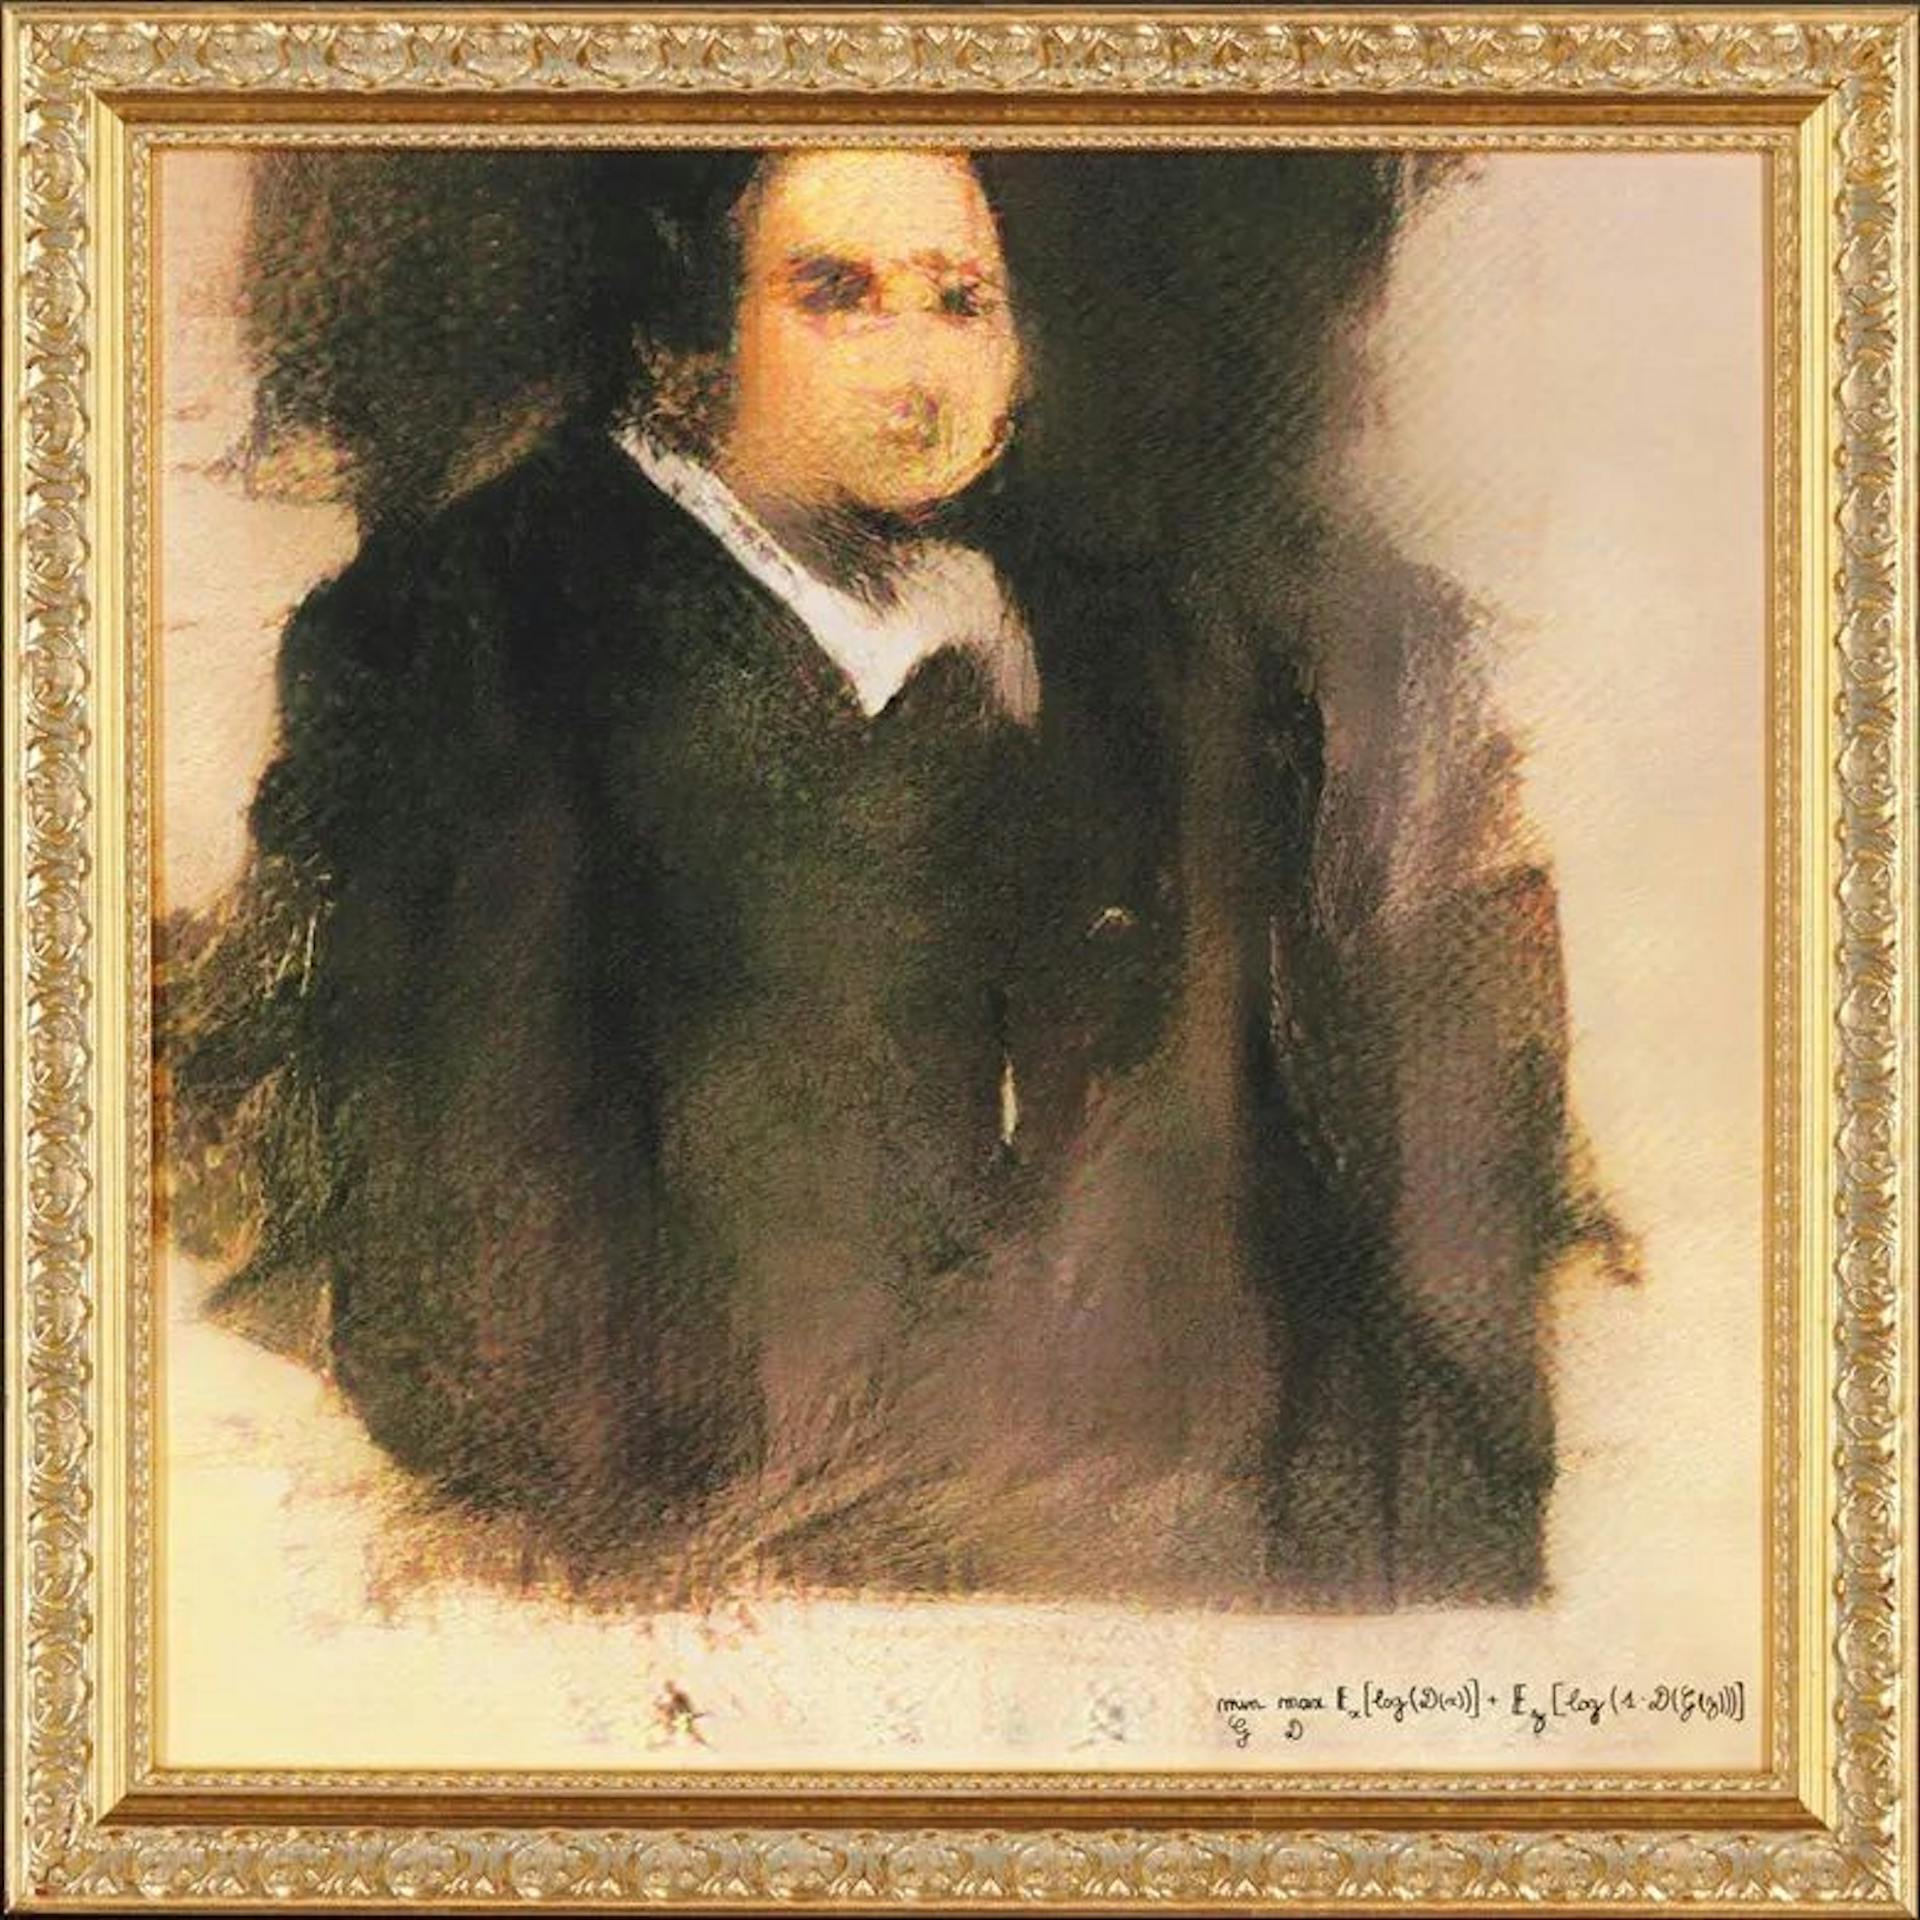 Chân dung của Edmond de Belamy, bức chân dung AI đầu tiên được bán bởi Christie với giá 432.500 USD. Ai nhận được tín dụng? Người hay máy?